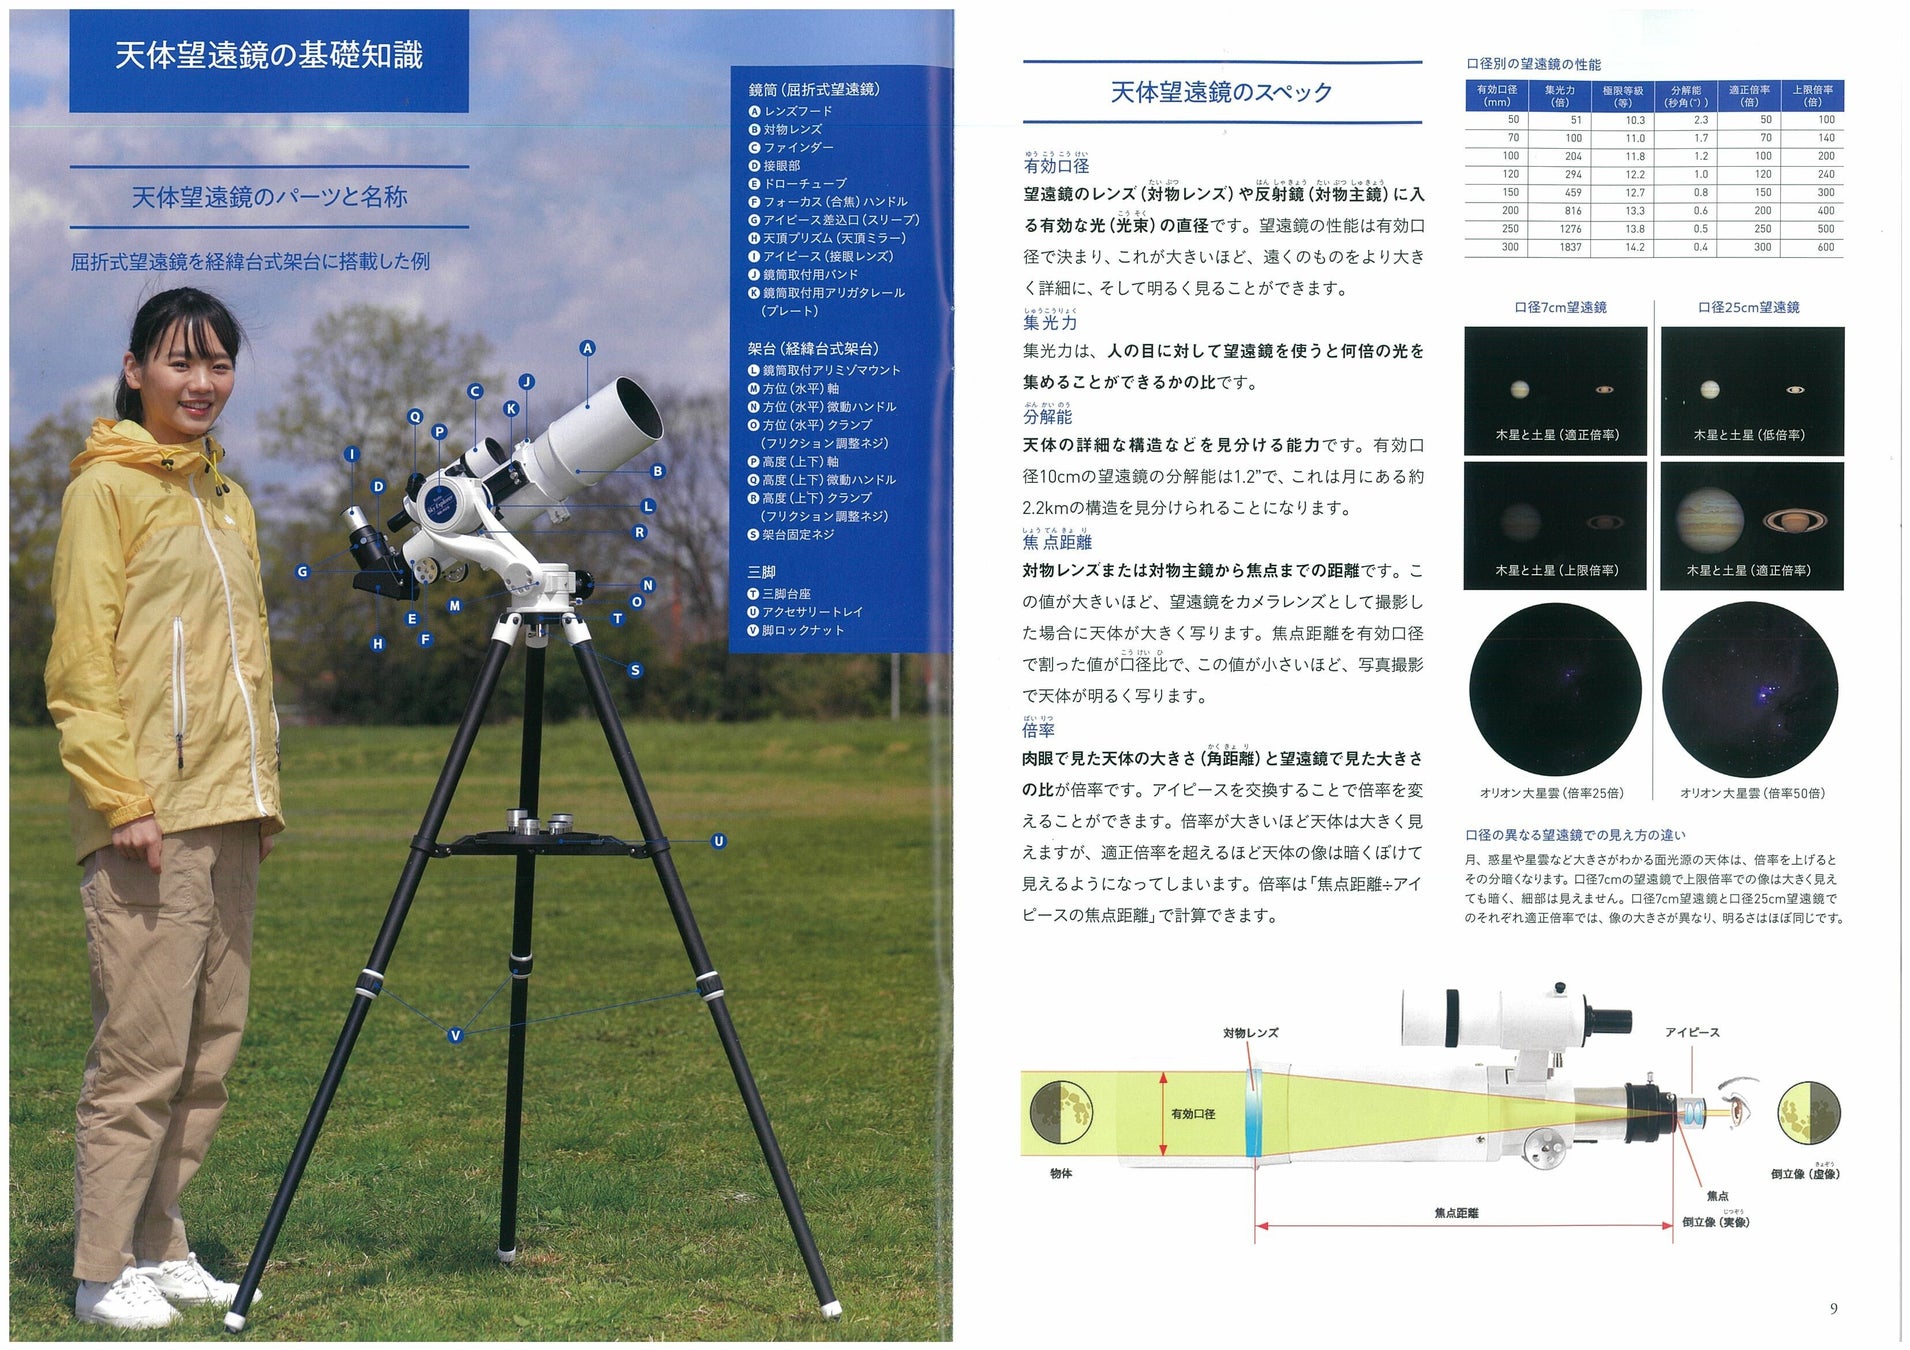 星空の基礎知識から天体望遠鏡の基礎知識、使い方を解説したガイドブック「天体望遠鏡ガイドブック」